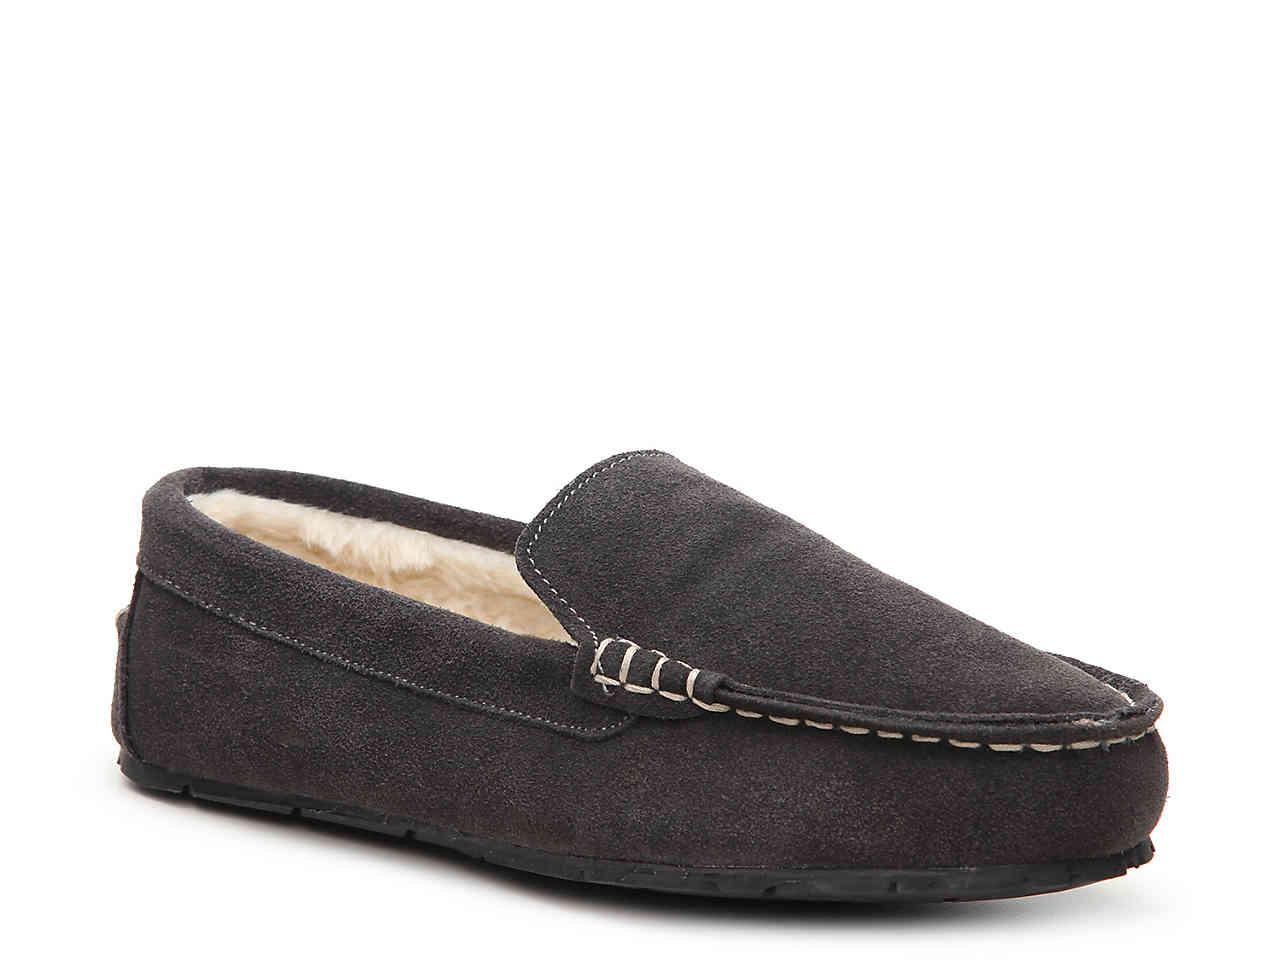 clarks mens venetian slippers